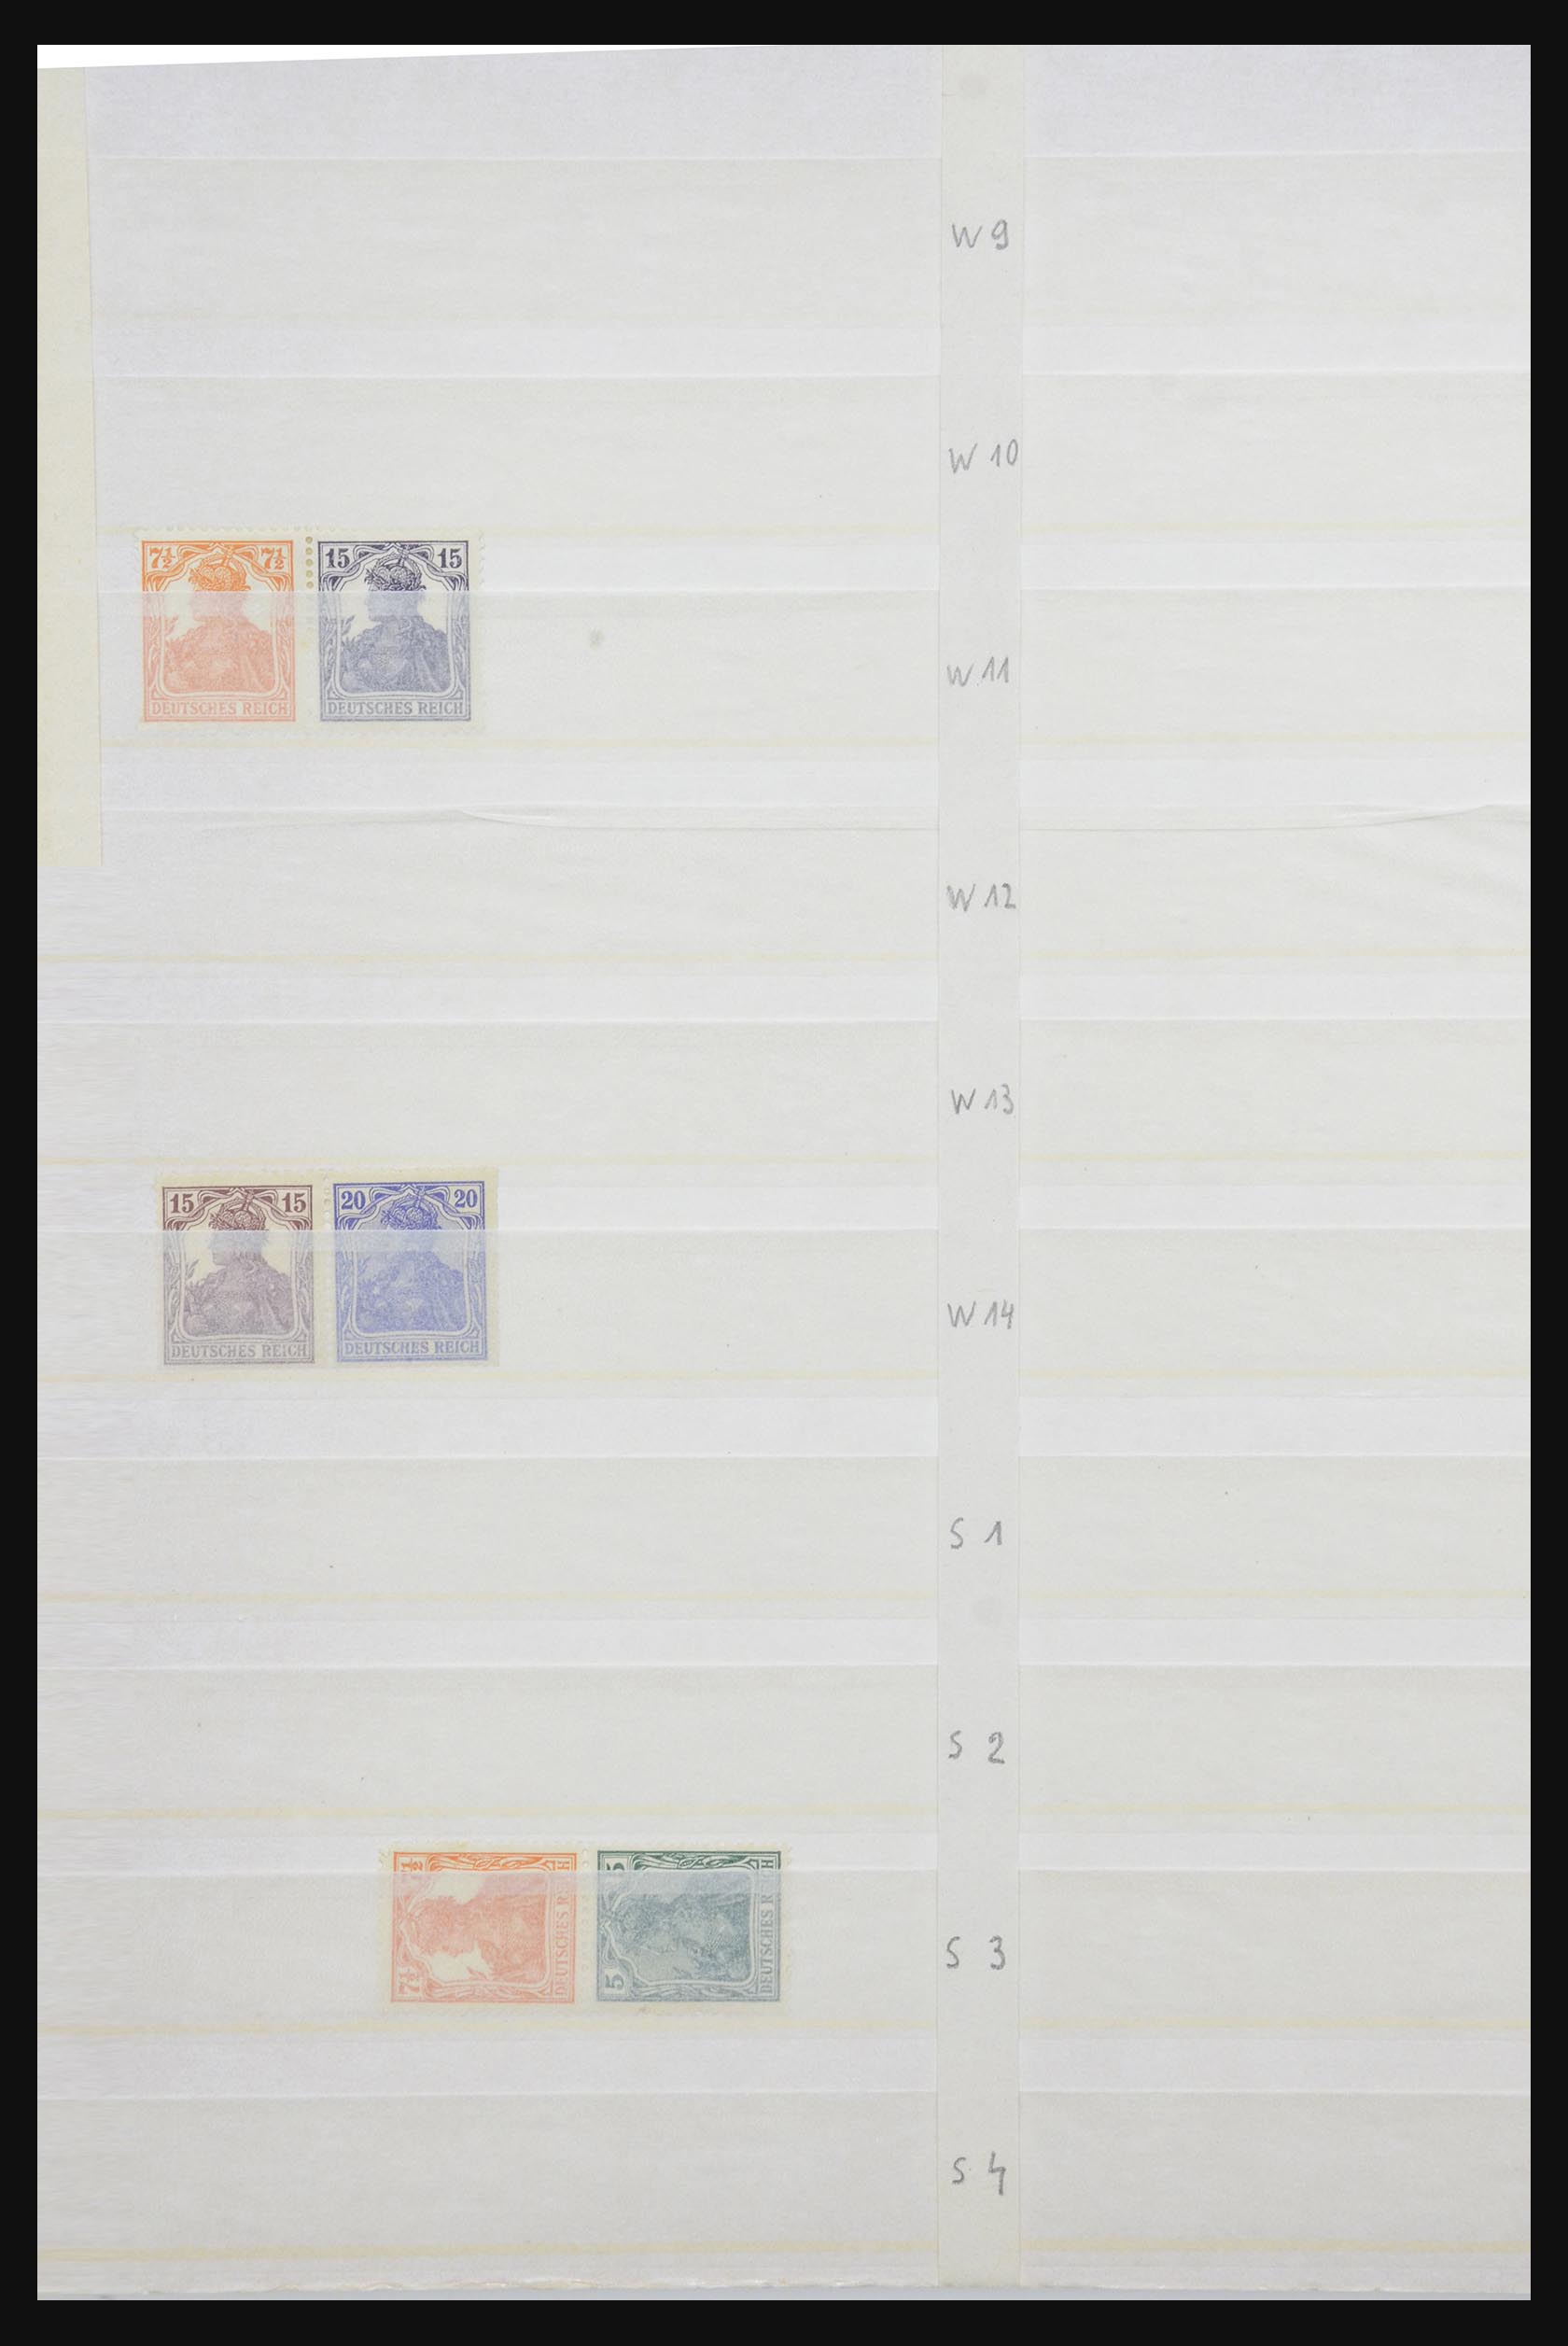 31884 002 - 31884 Duitsland combinaties 1920-1980.